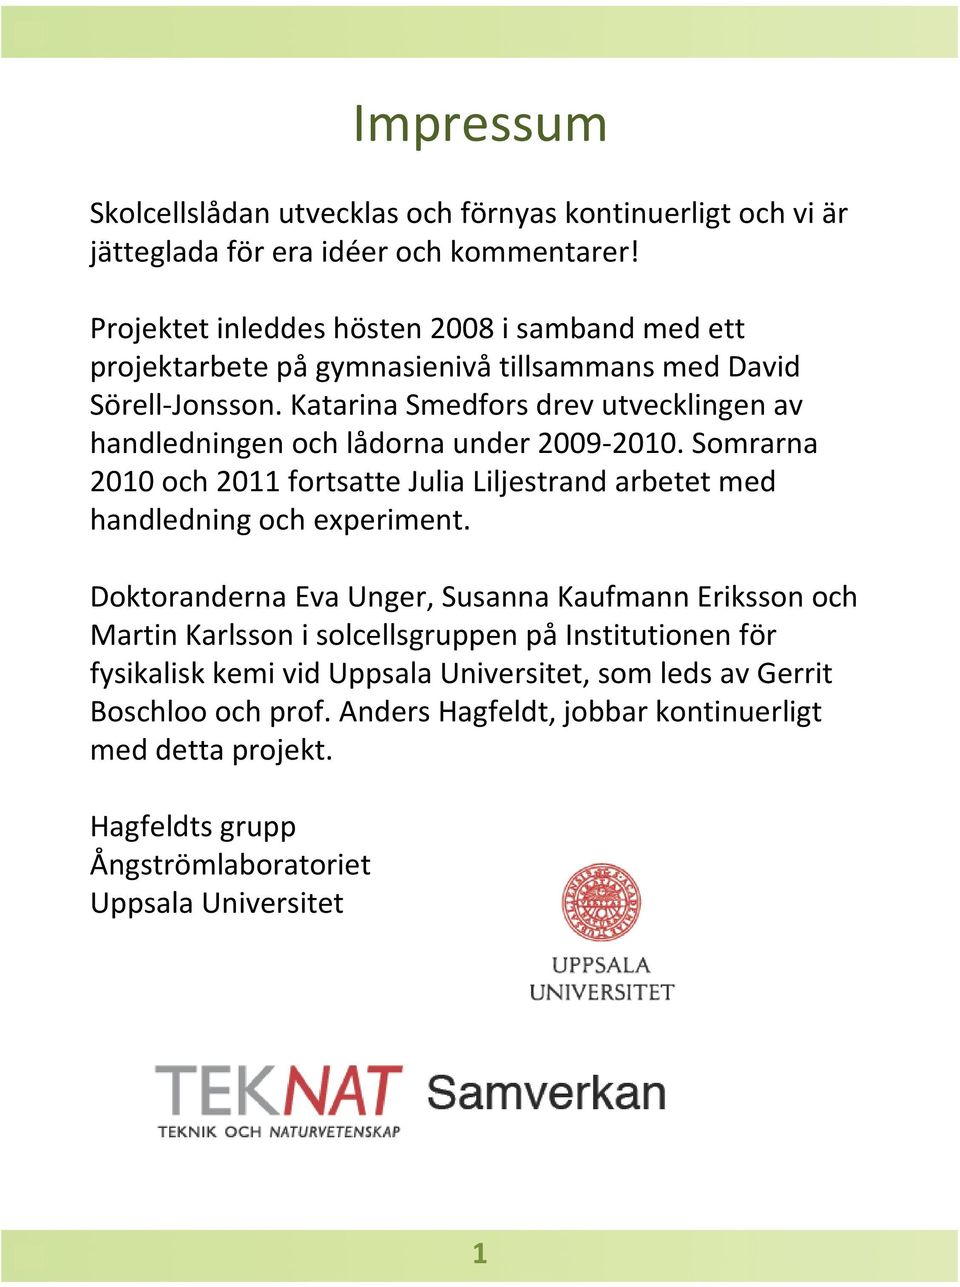 Katarina Smedforsdrev utvecklingen av handledningen och lådorna under 2009-2010. Somrarna 2010 och 2011 fortsatte Julia Liljestrand arbetet med handledning och experiment.